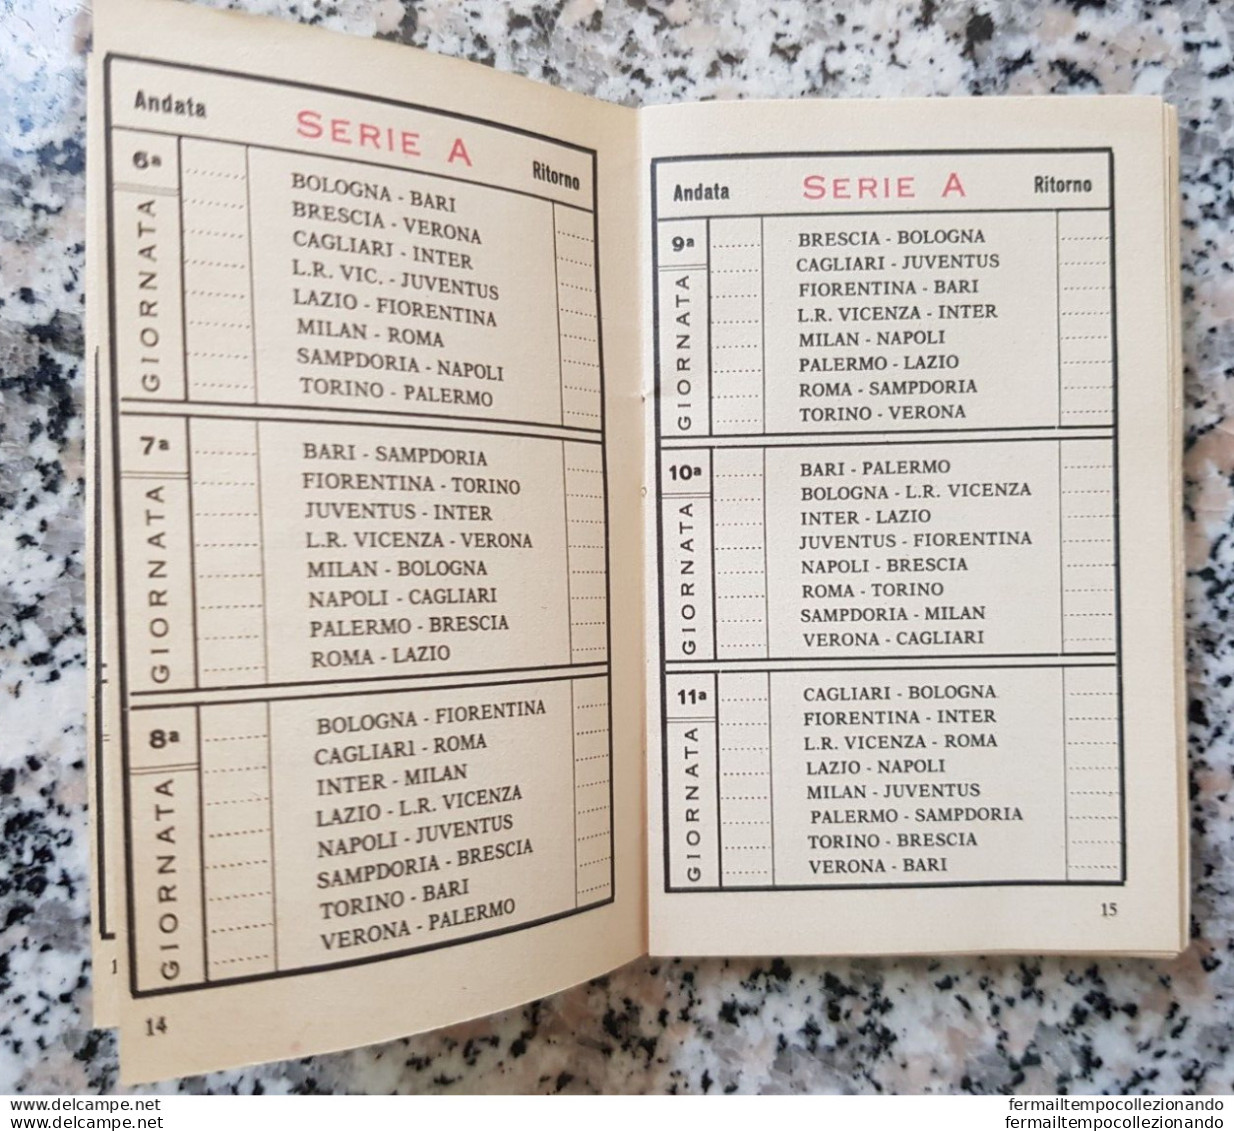 bp2 almanacco calcistico 1969-1970 rilegato con libretto s.antonio